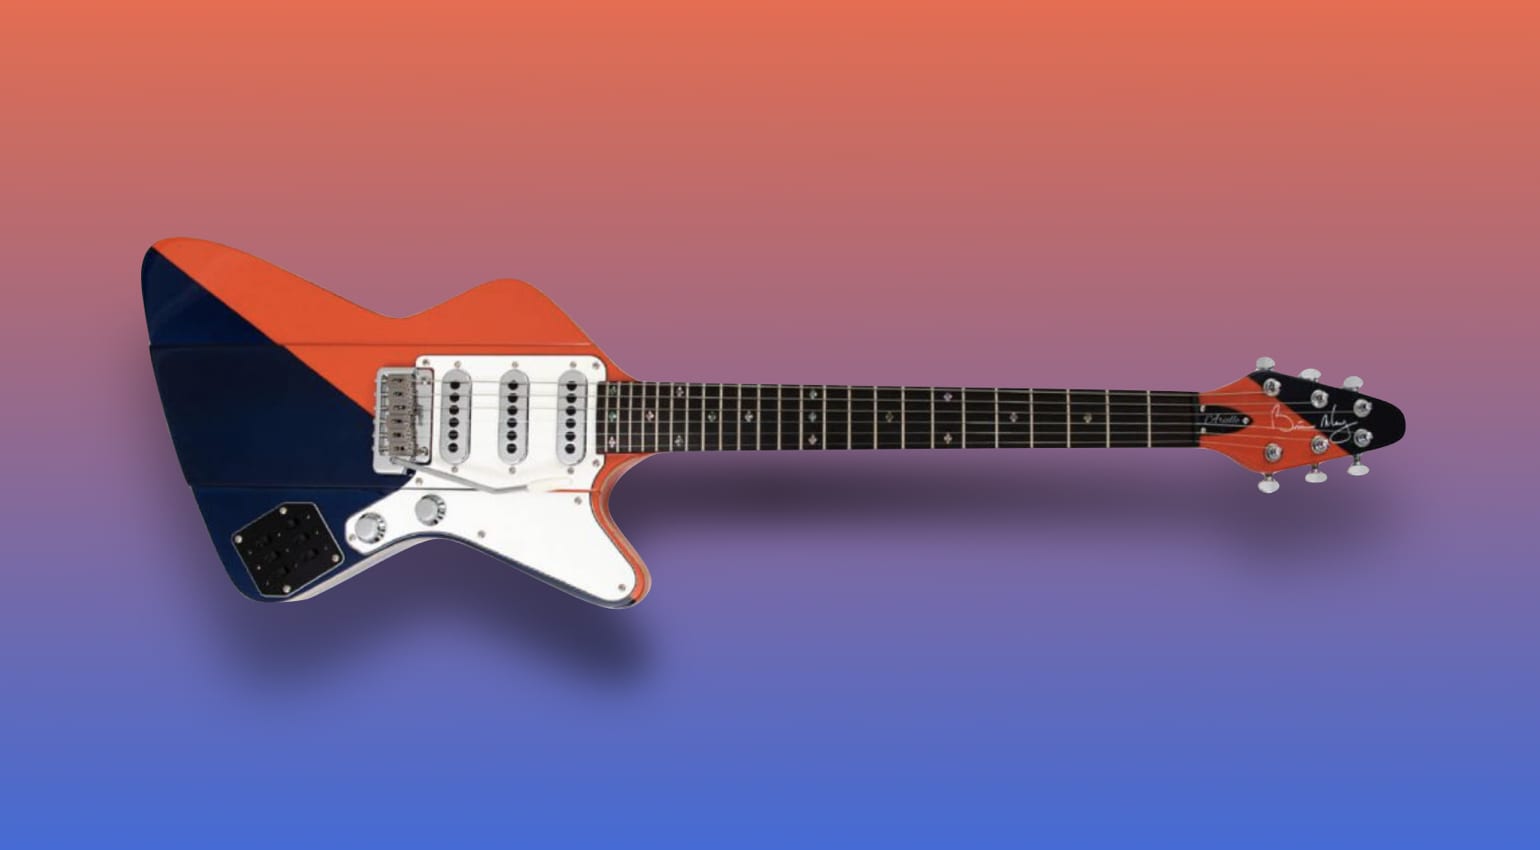 Transitorio Subordinar Perla Anunciada la fecha de lanzamiento oficial de la nueva Arielle Two Tone de Brian  May Guitars - gearnews.es